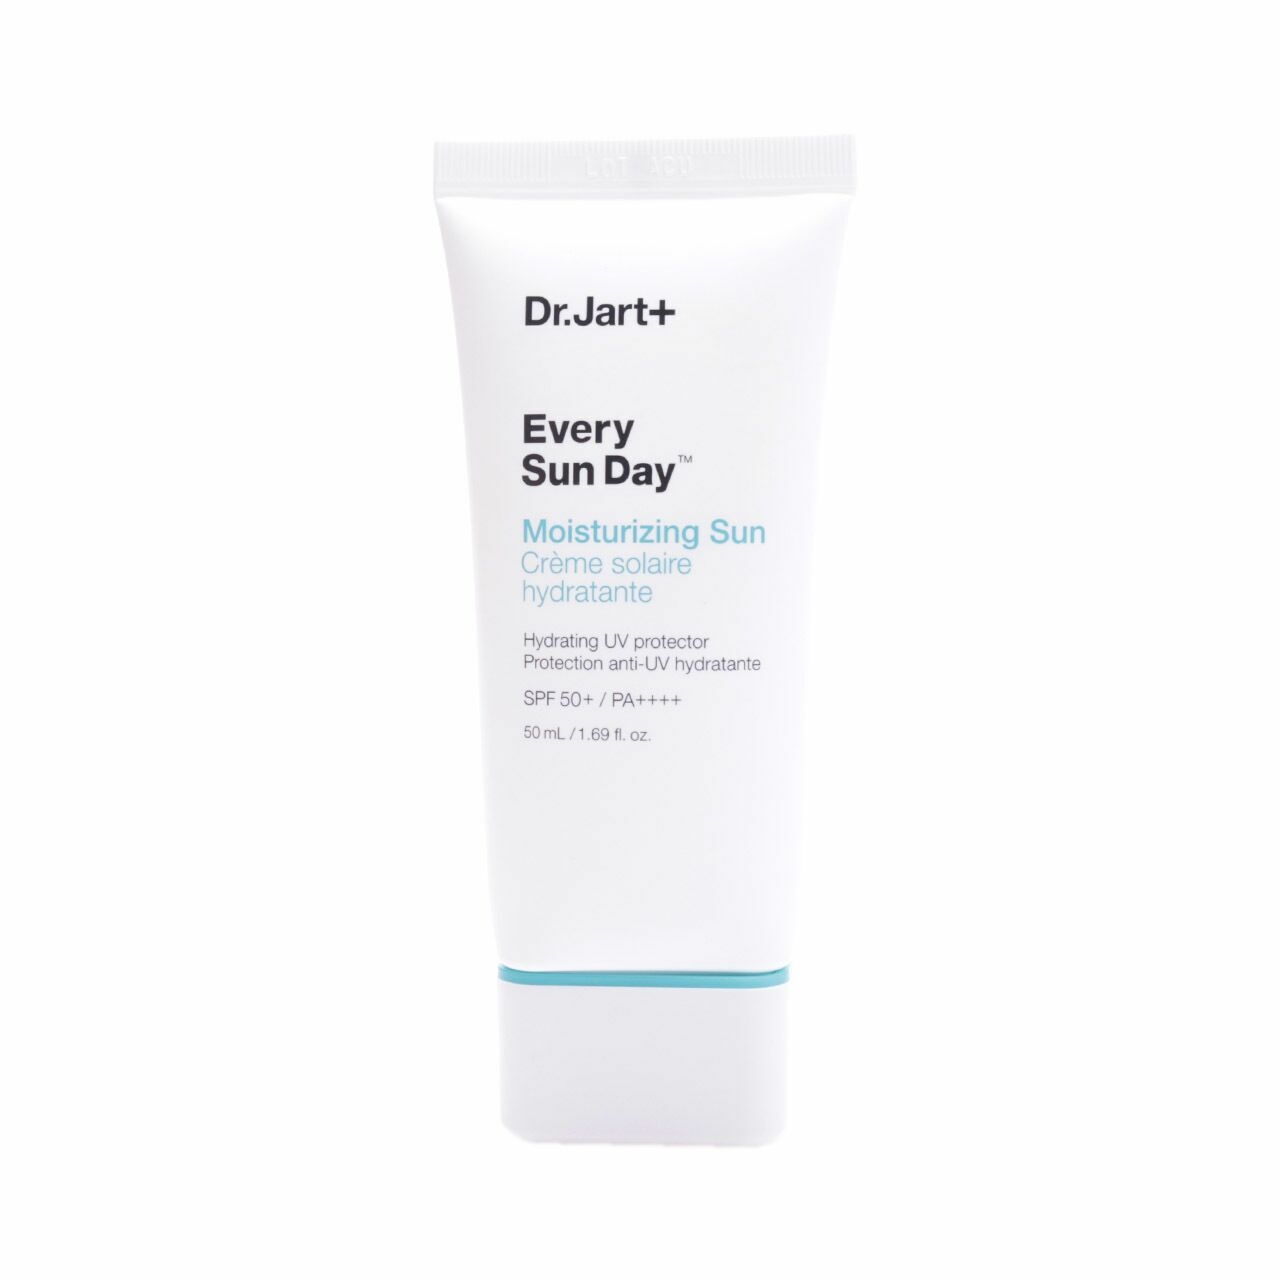 Dr.Jart+ Every Sun Day Moisturizing Sun Spf 50+/Pa++++ Skin Care